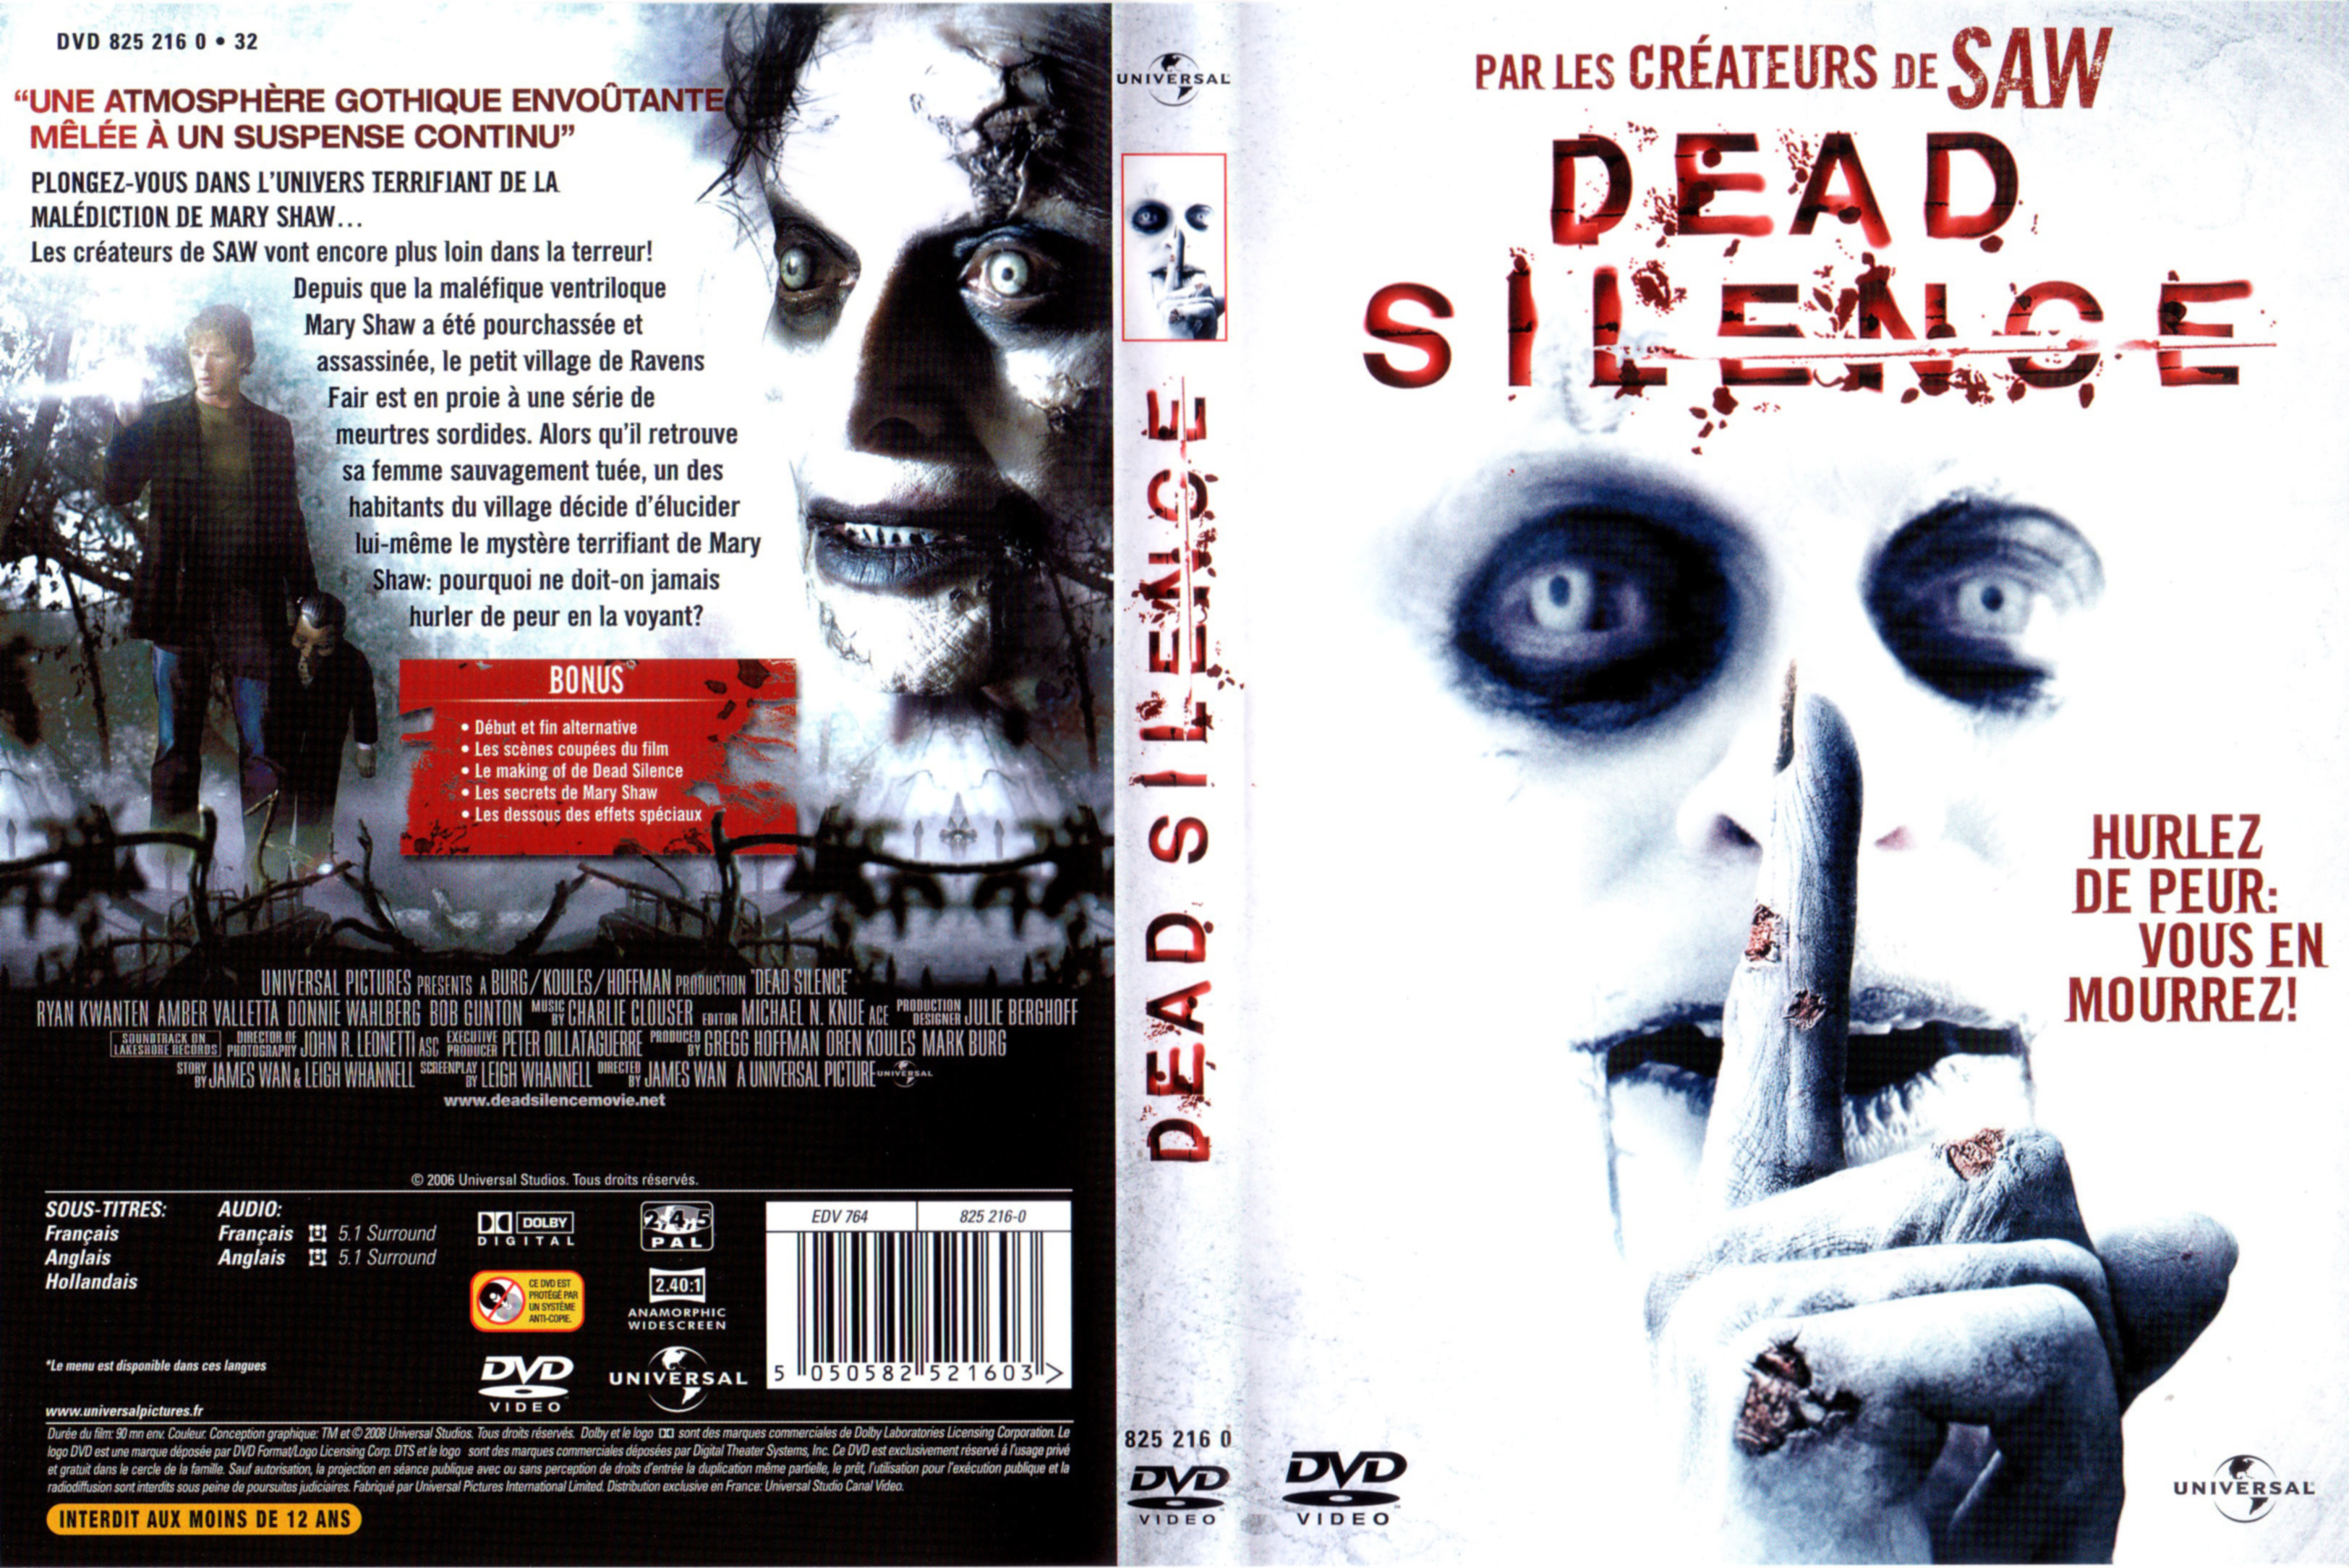 Jaquette DVD Dead silence v2